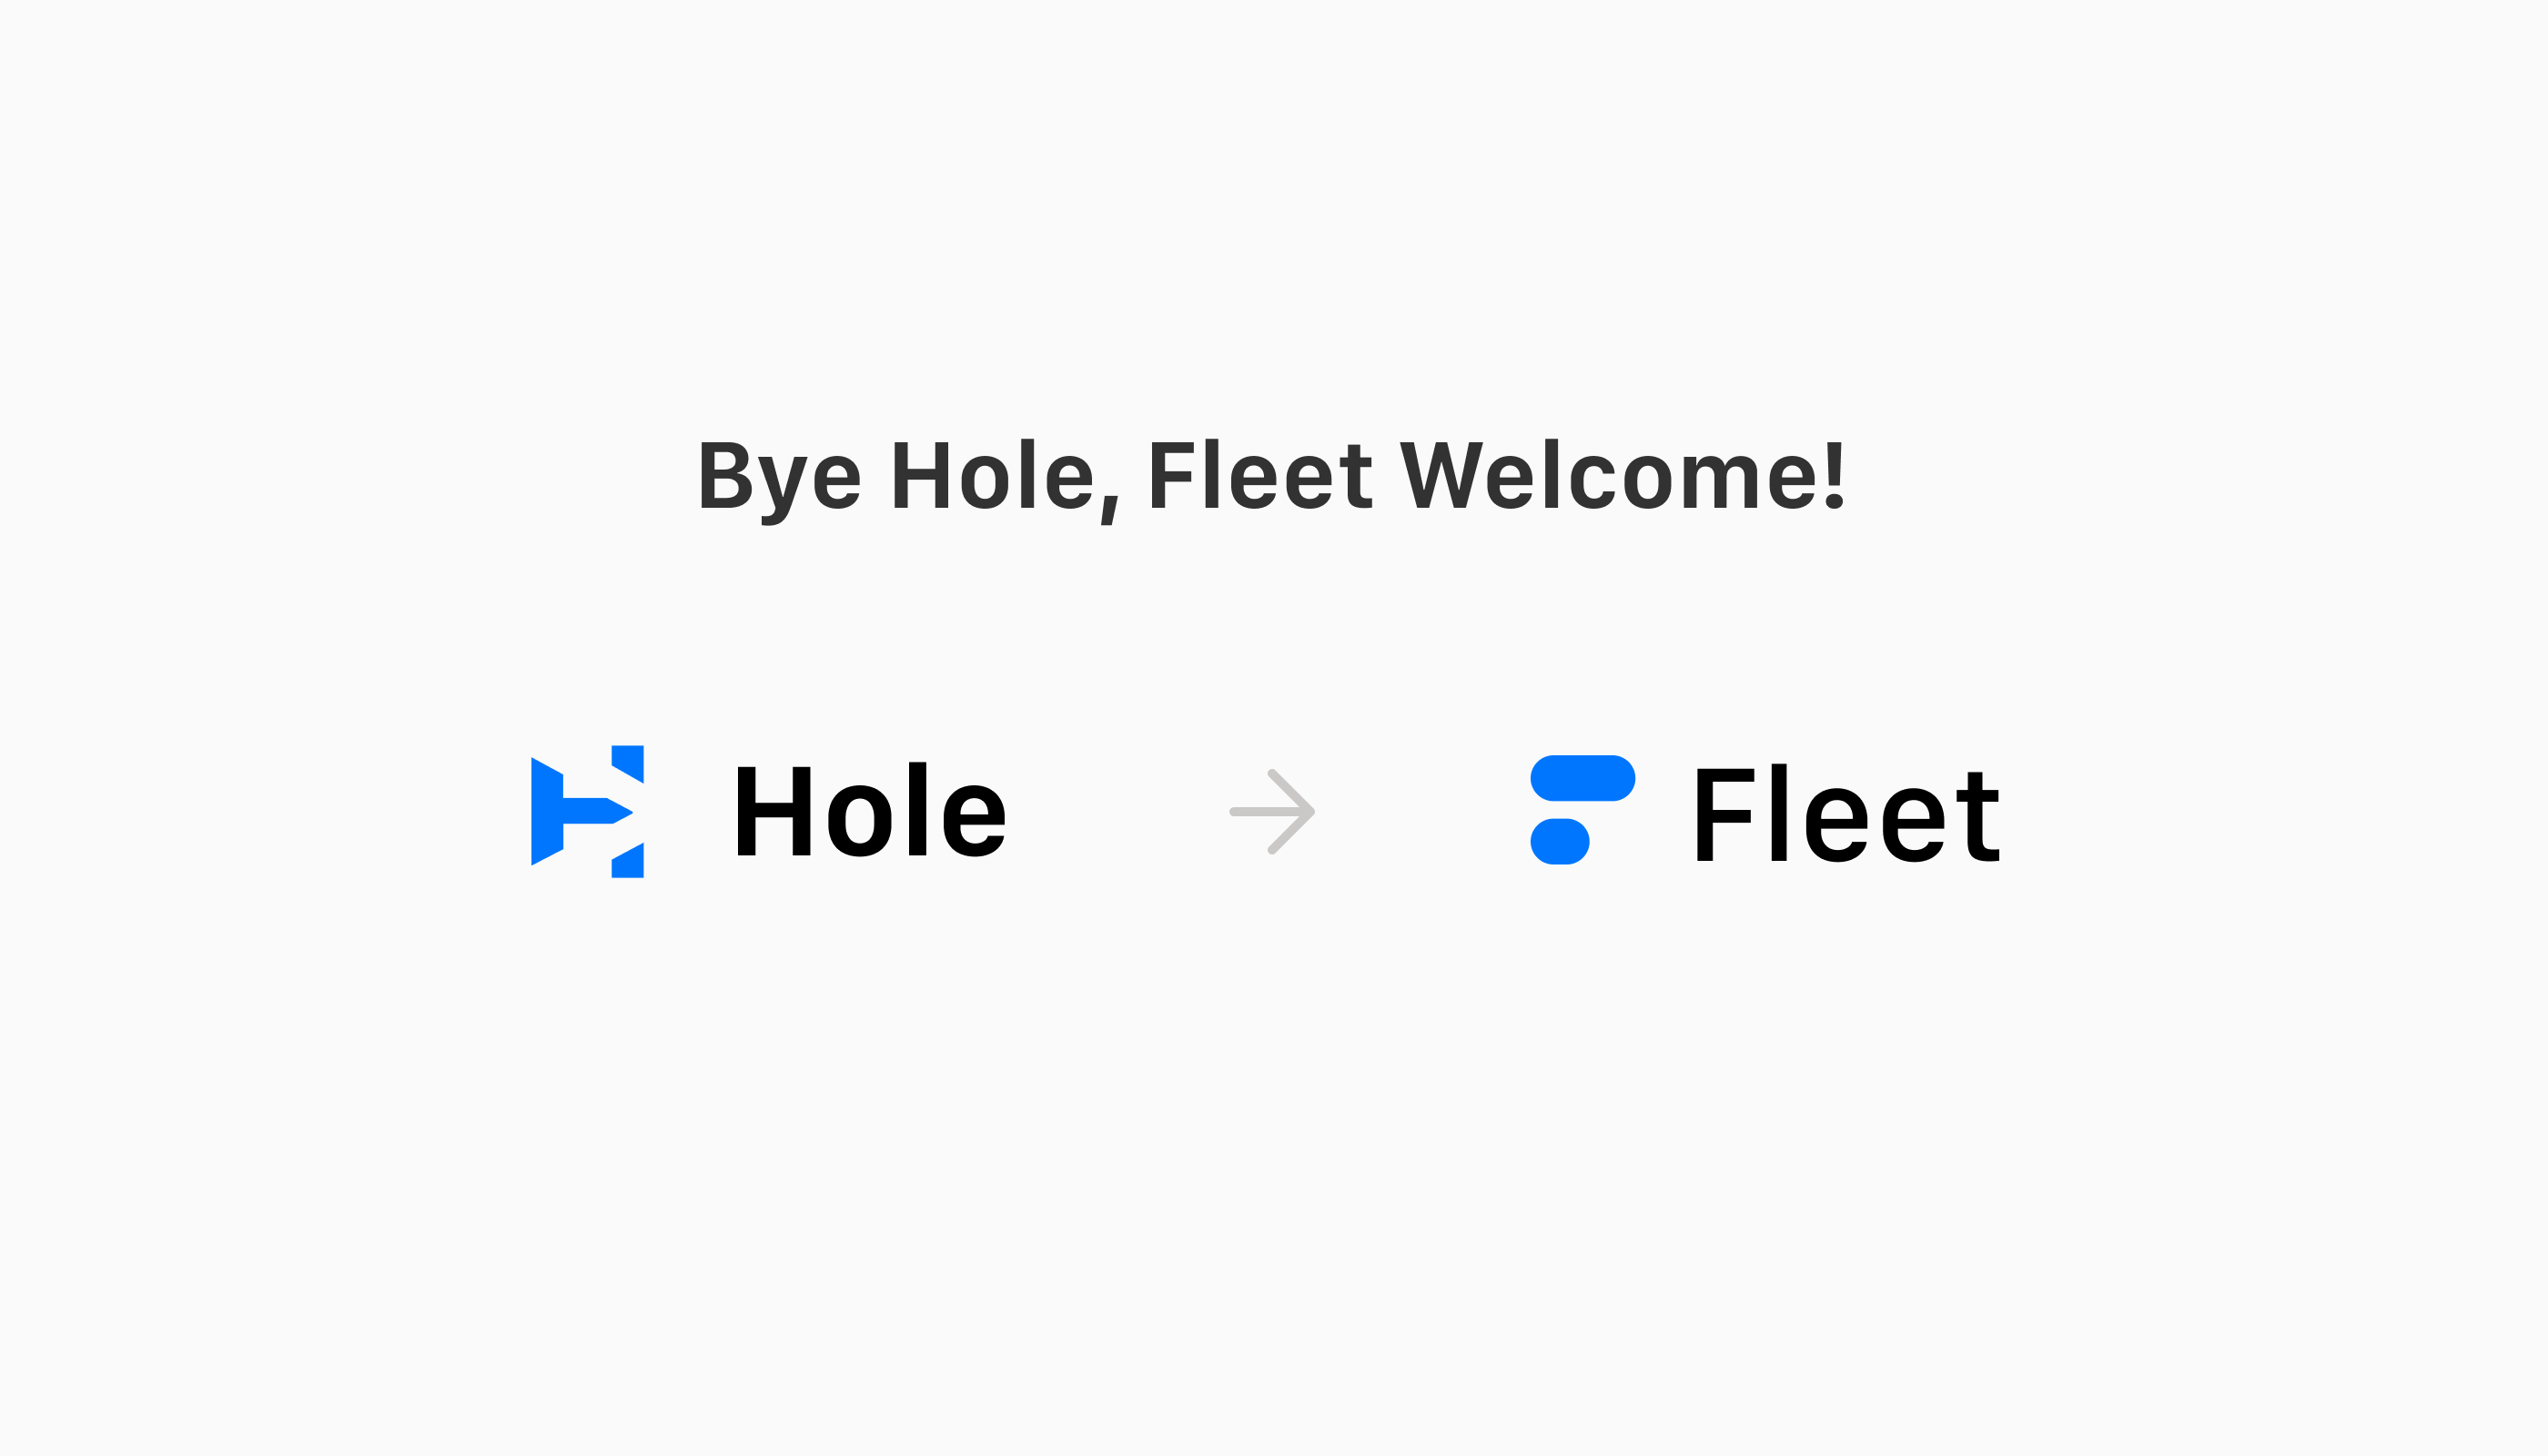 Bye Hole, Fleet Welcome!